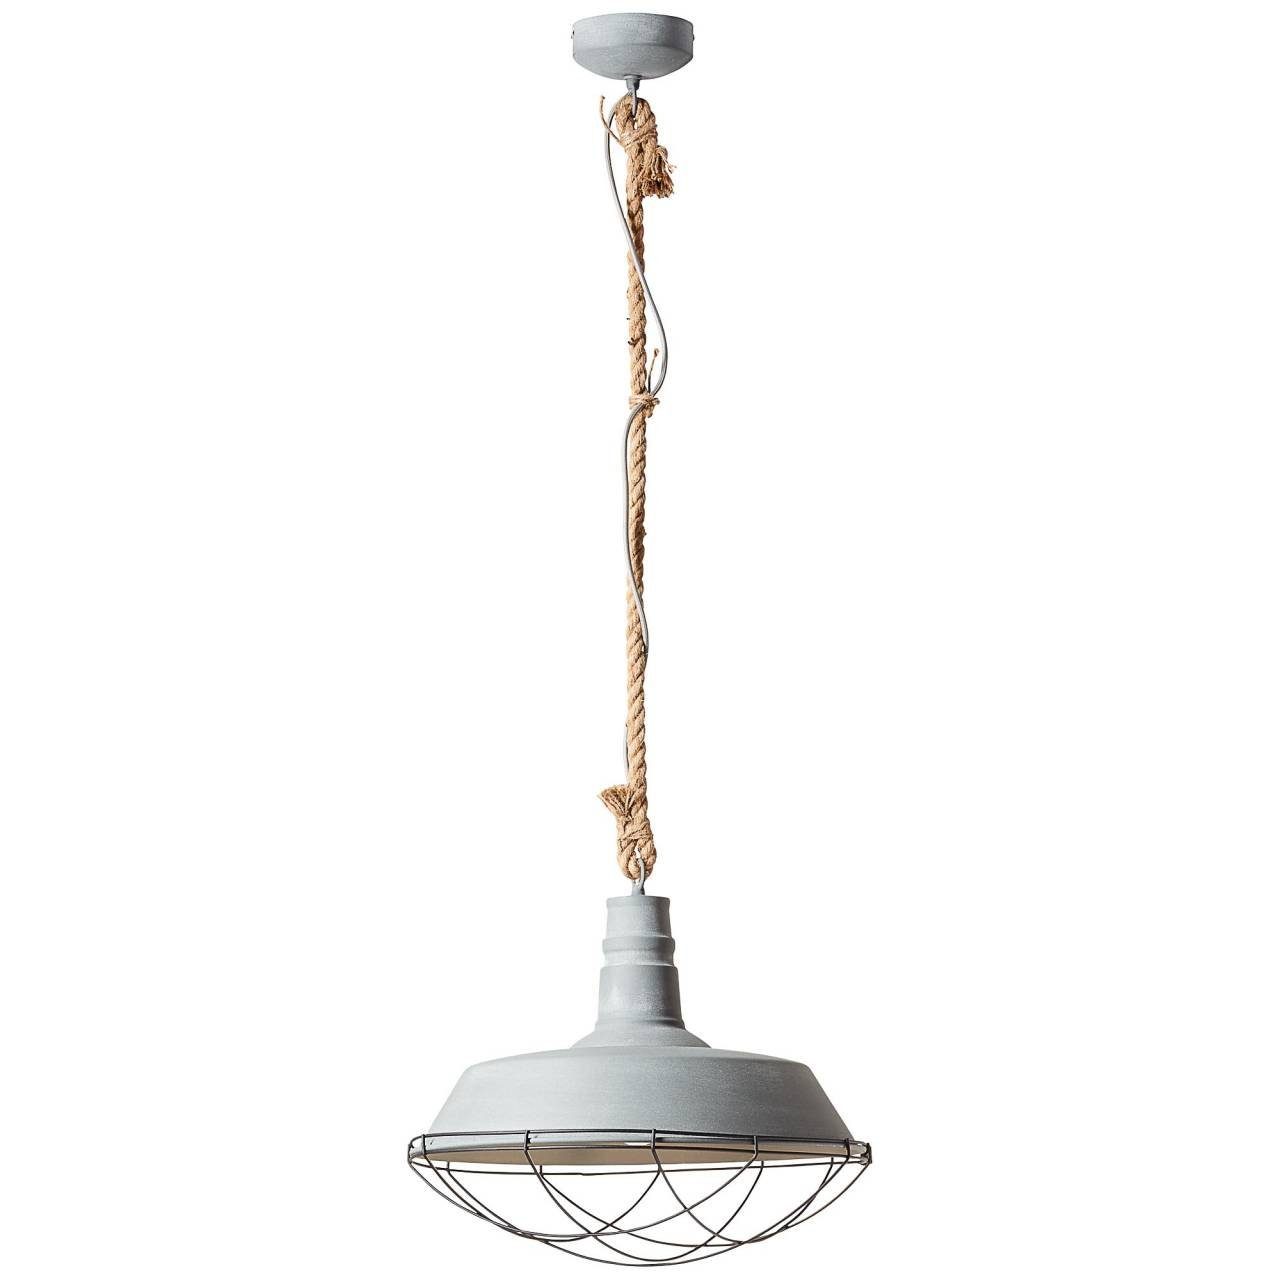 1x Rope Pendelleuchte A60, 60W, Rope, Beton E27, grau 47cm Brilliant Lampe Pendelleuchte geeignet